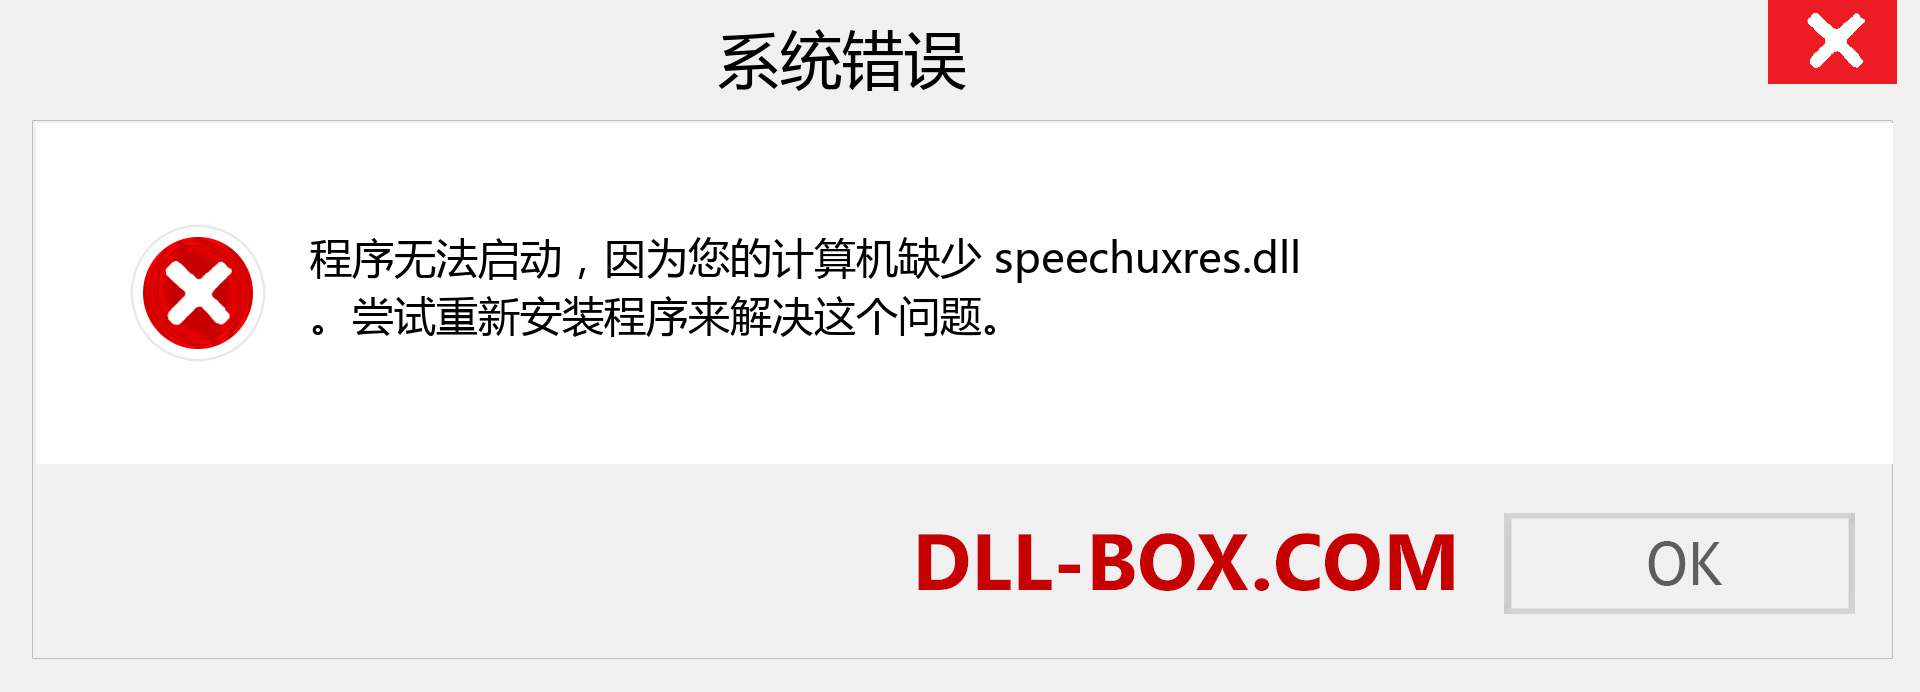 speechuxres.dll 文件丢失？。 适用于 Windows 7、8、10 的下载 - 修复 Windows、照片、图像上的 speechuxres dll 丢失错误